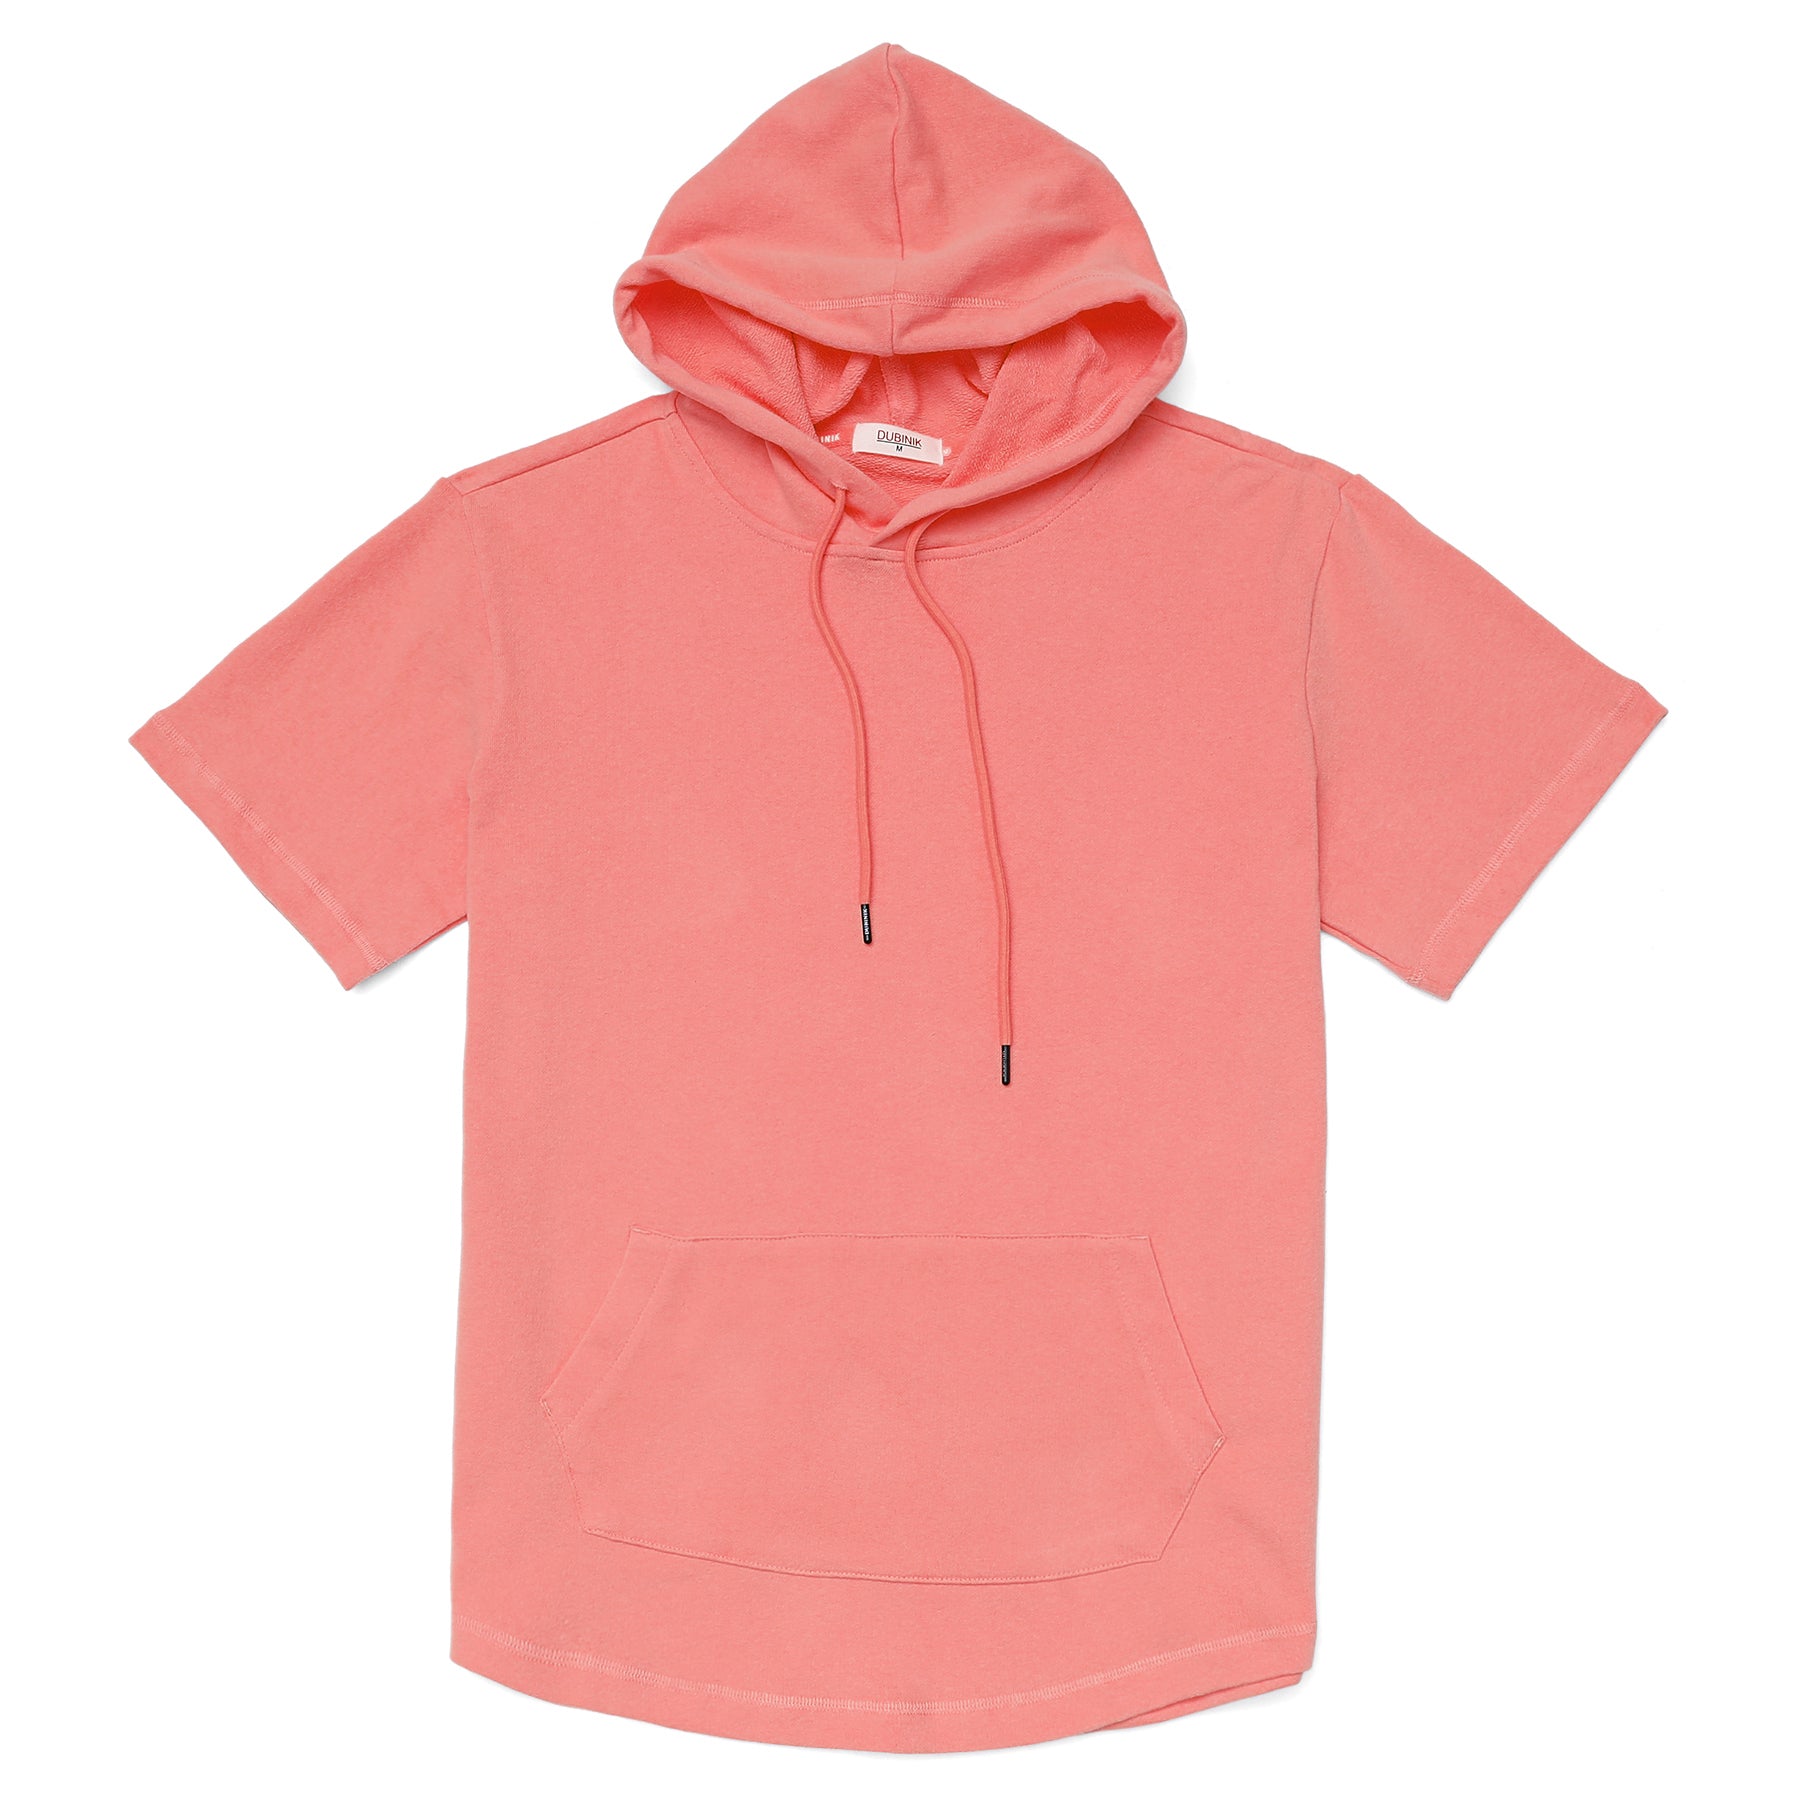 Men's Hoodies short-sleeved hooded sweatshirt #0615